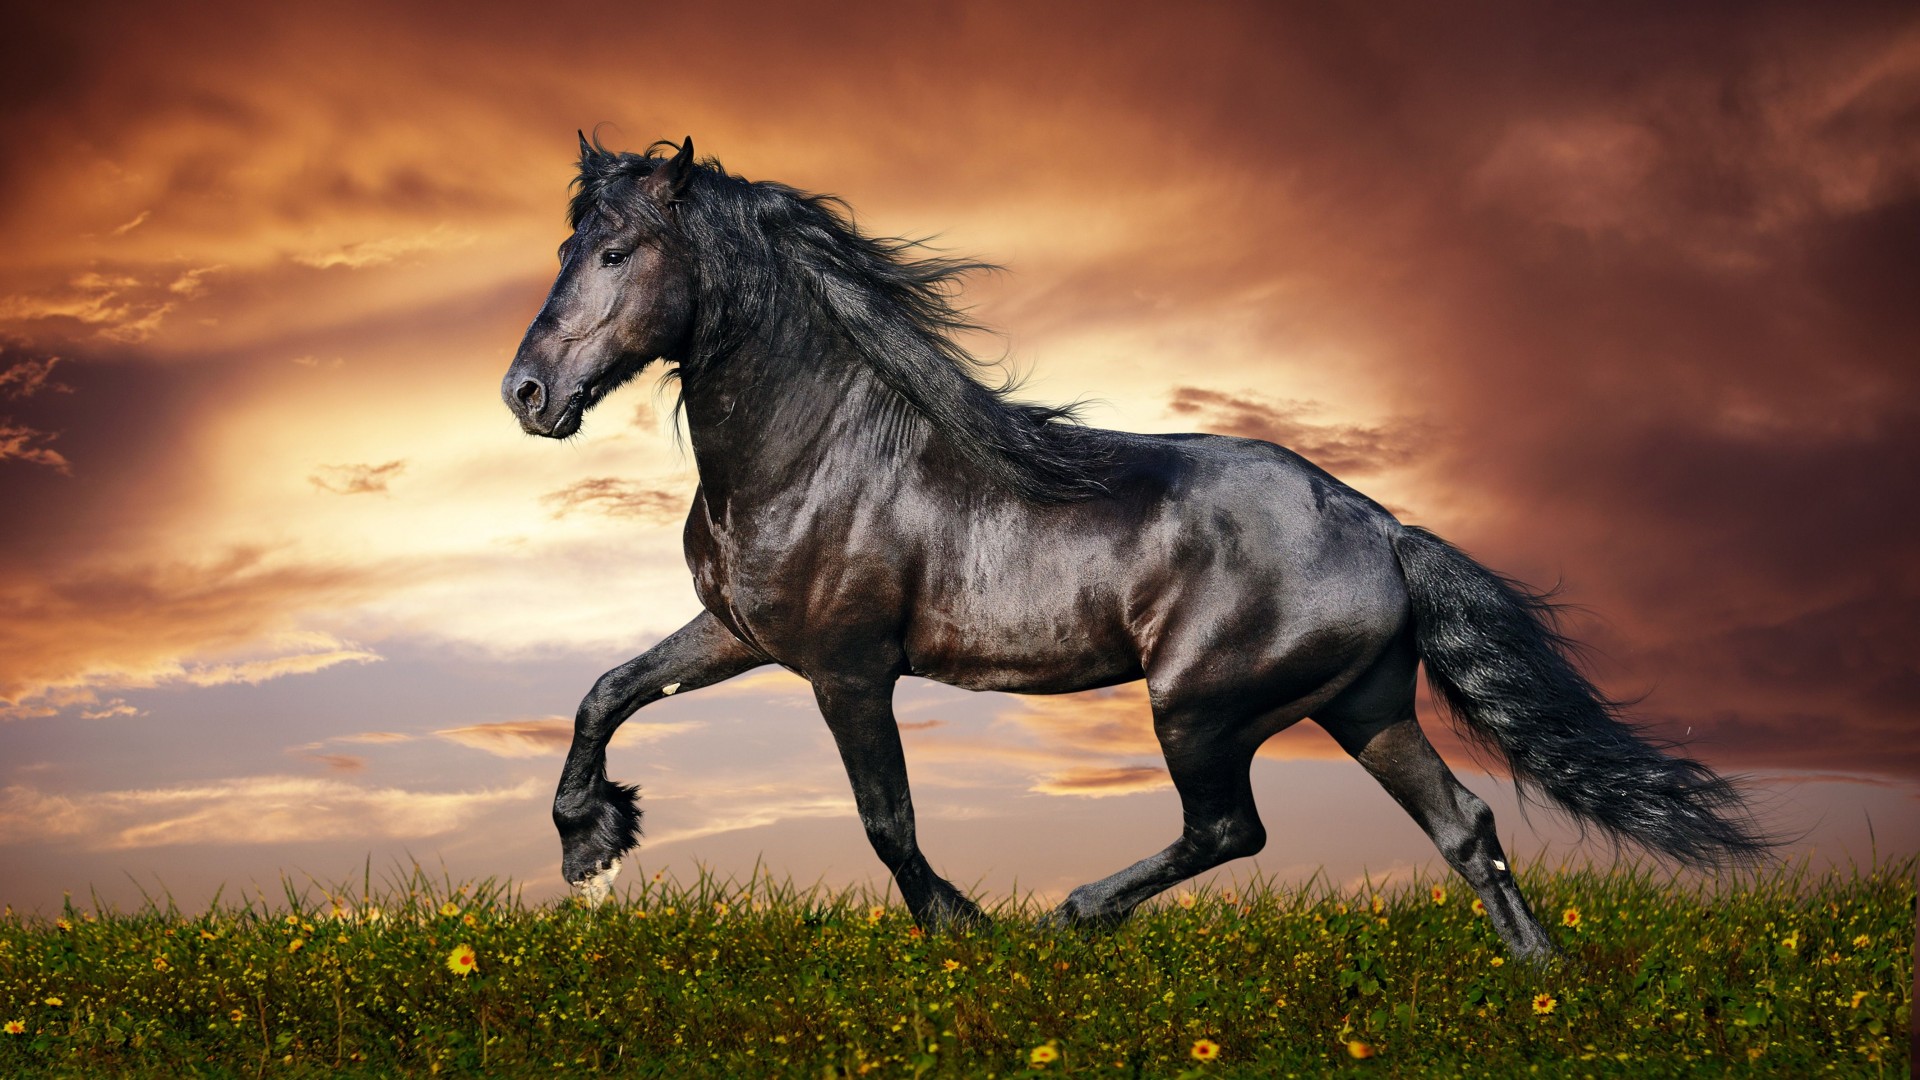 лошадь, 5k, 4k, копыта, грива, скачет, черная, белый фон, арт, horse, 5k, 4k wallpaper, hooves, mane, galloping, black, sunset, green grass, sky, clouds (horizontal)